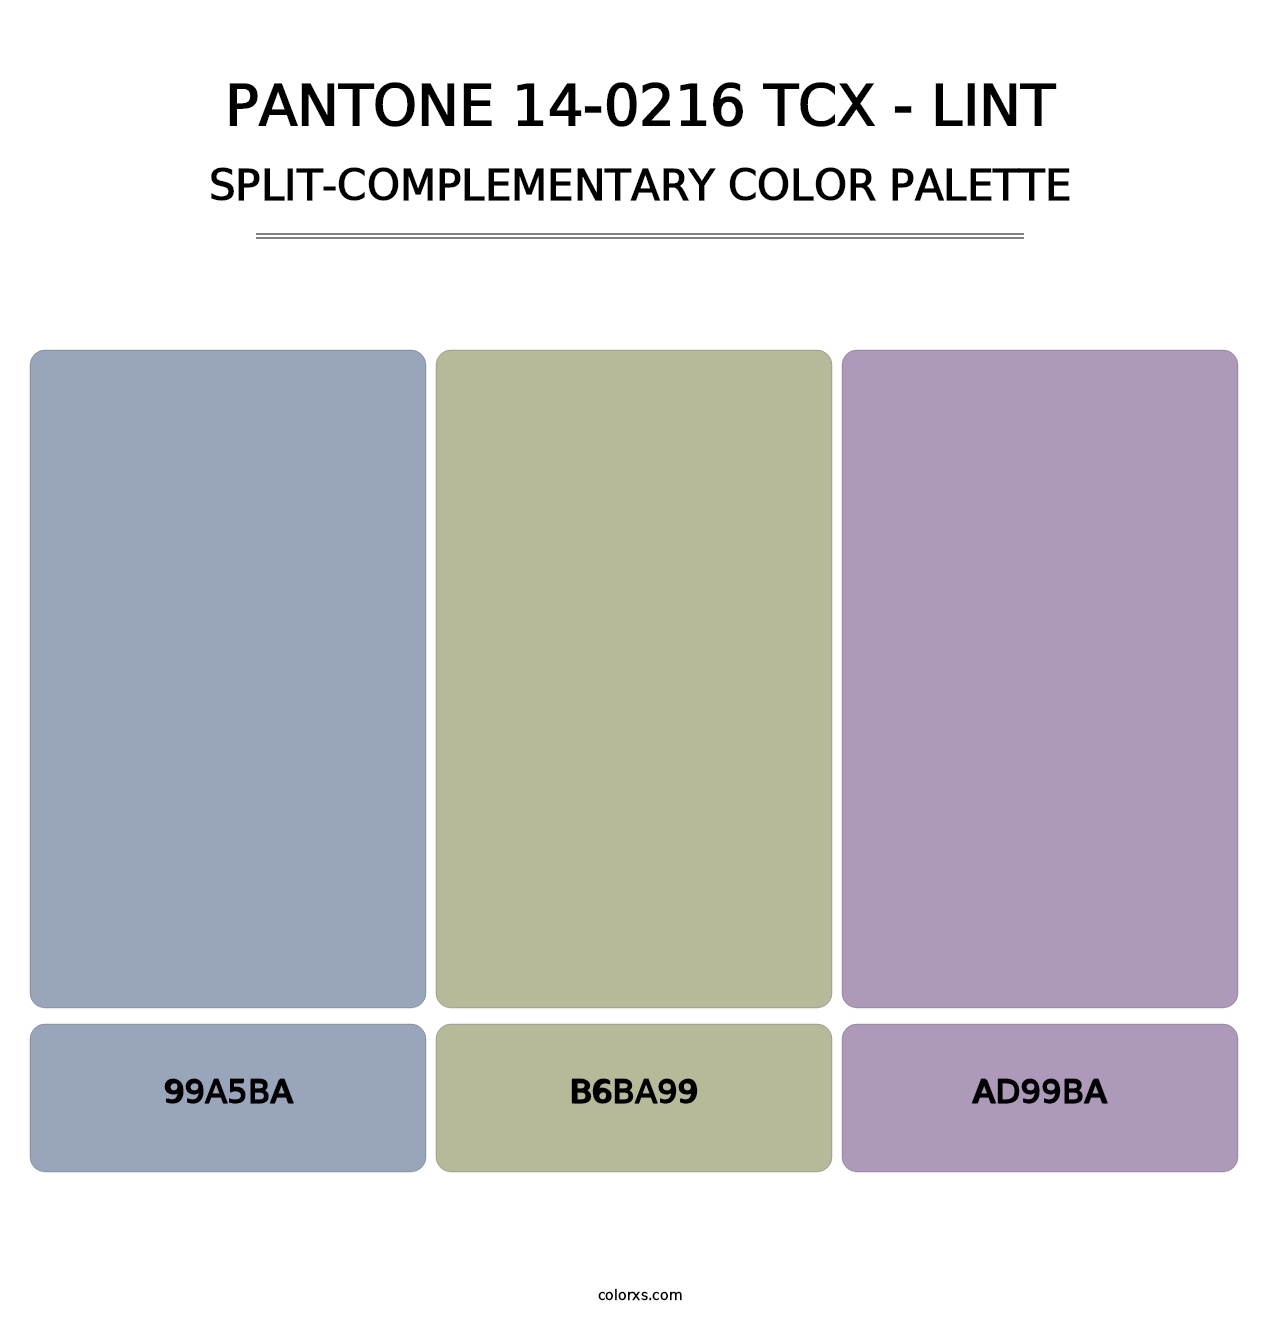 PANTONE 14-0216 TCX - Lint - Split-Complementary Color Palette